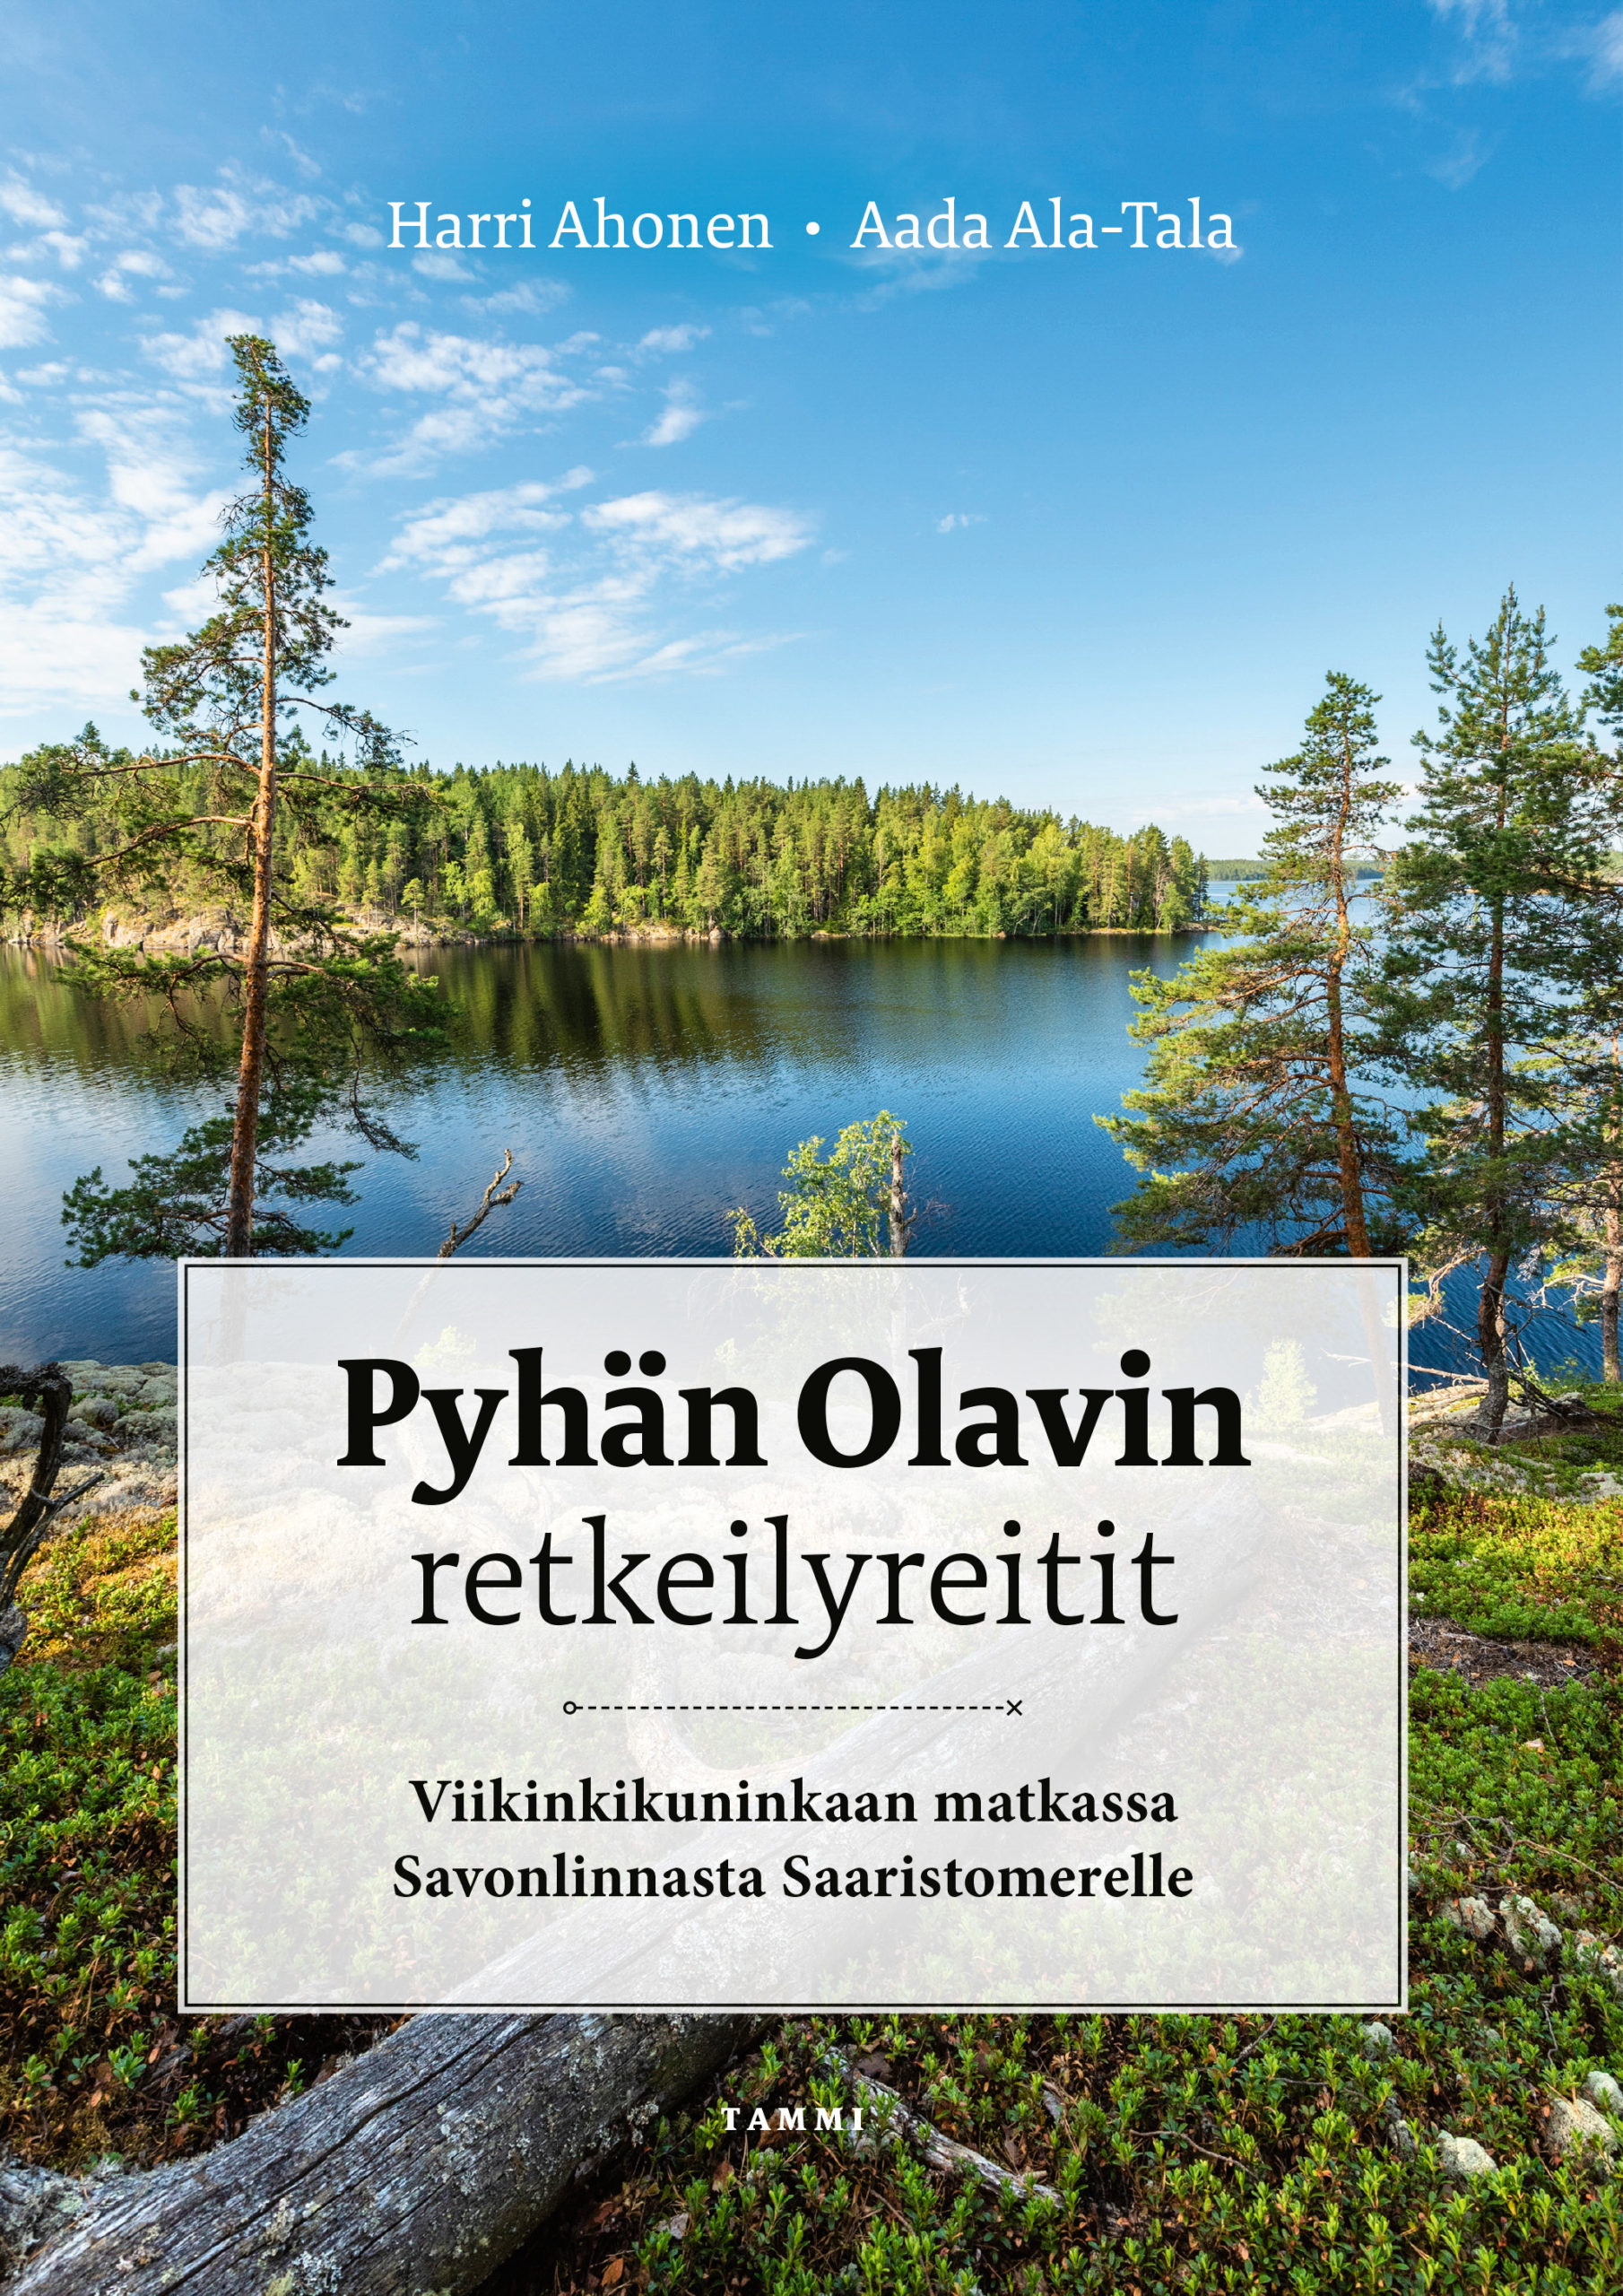 Pyhän Olavin retkeilyreitit -kirja - Visit Savonlinna